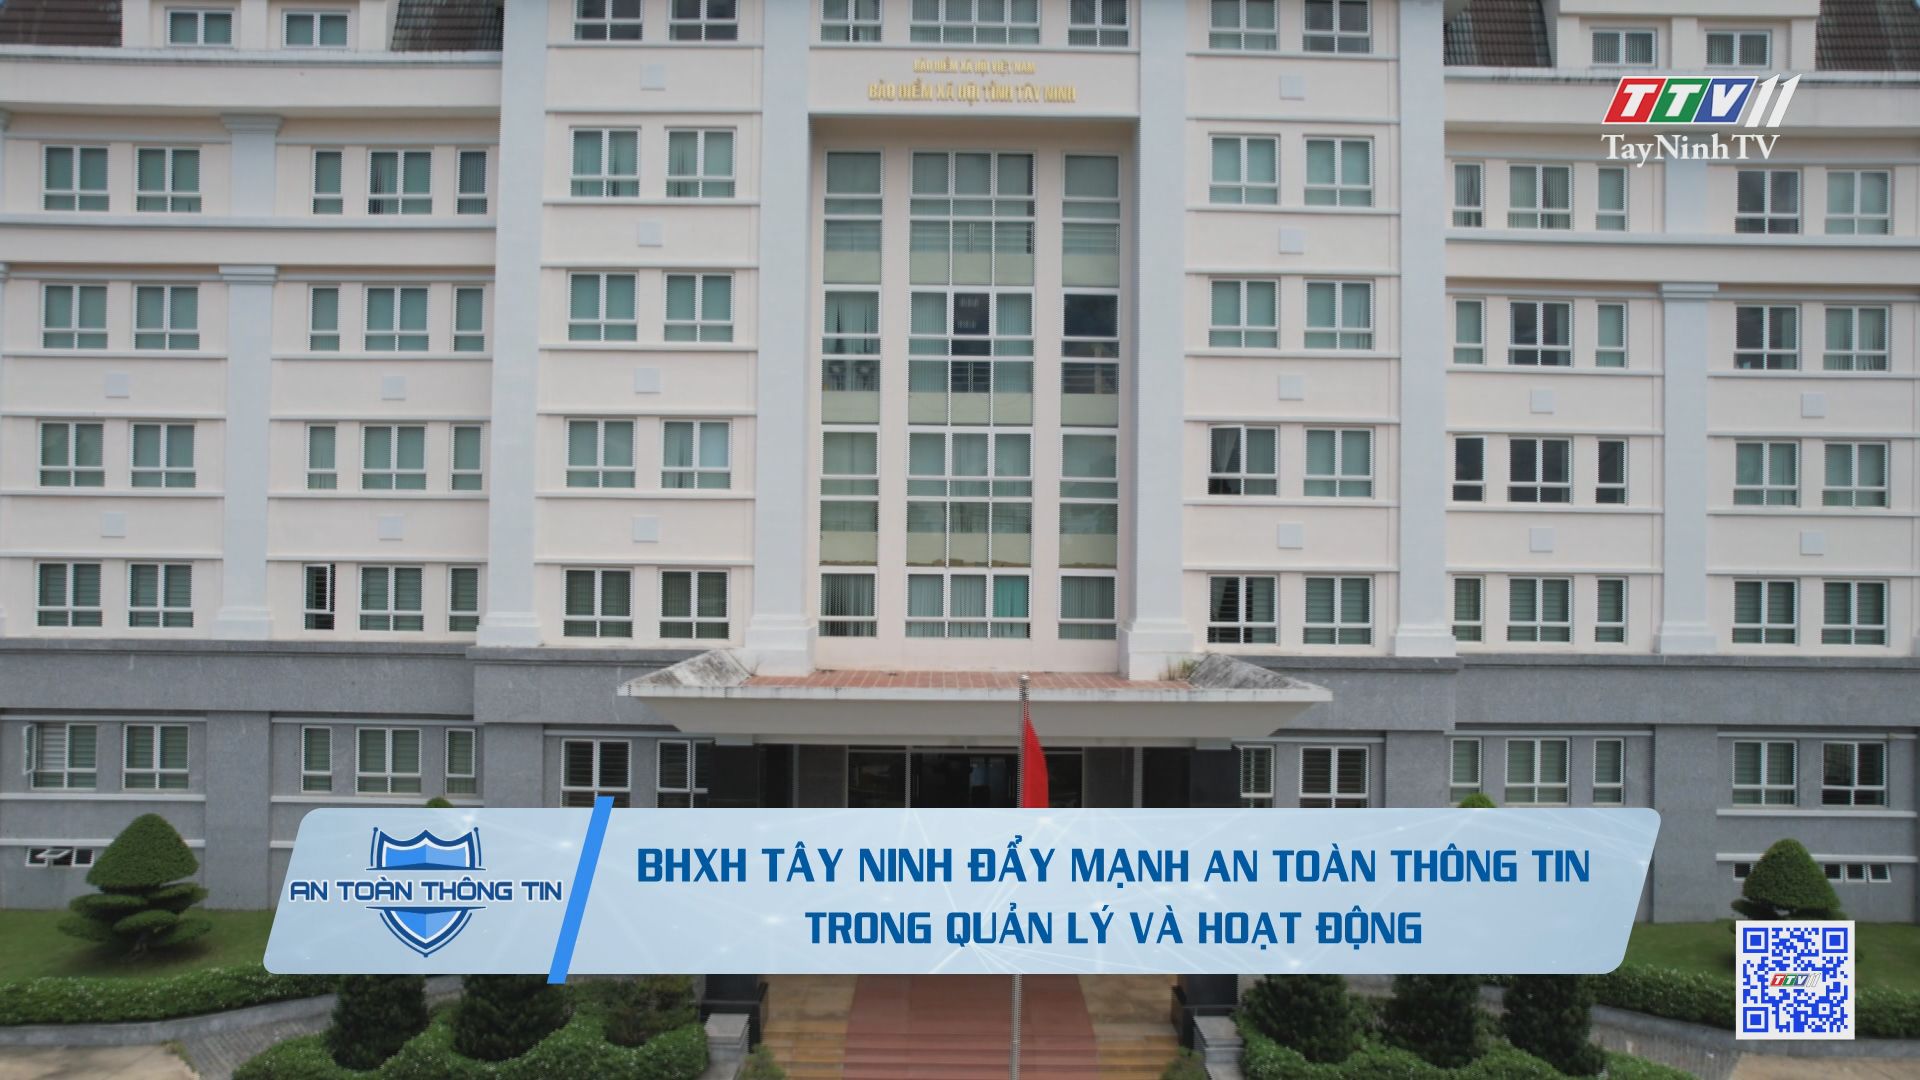 Bảo hiểm xã hội Tây Ninh đẩy mạnh an toàn thông tin trong quản lý và hoạt động | TayNinhTV